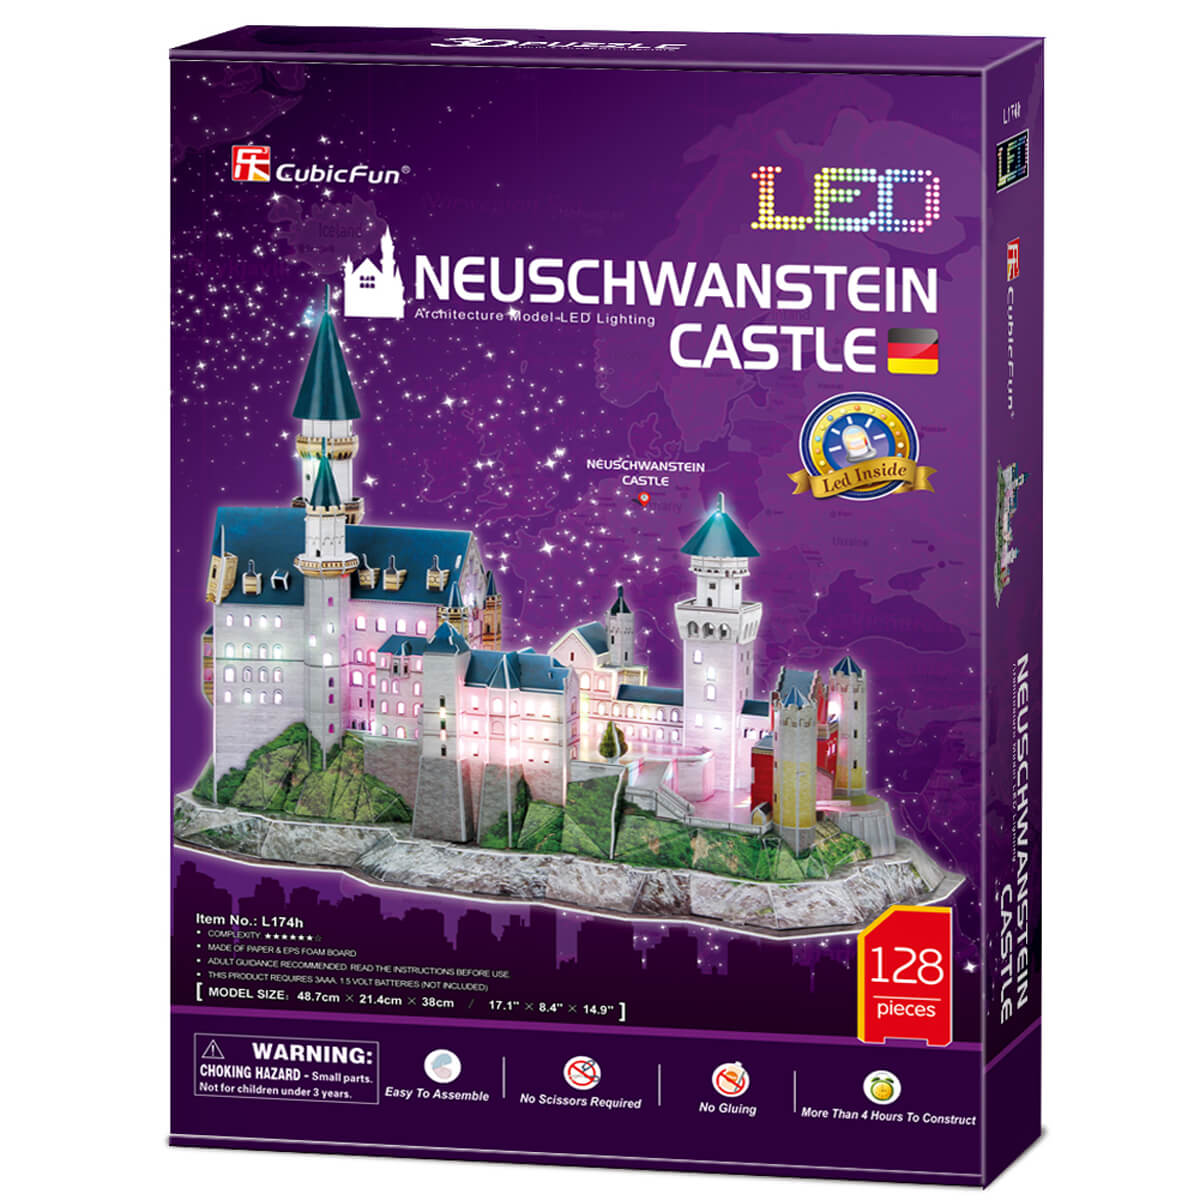 ΠΑΙΔΙ | Παιχνίδια | Επιτραπέζια - Παζλ - Βιβλία - Χειροτεχνίες | PUZZLES - BRAINTEASERS Neuschwanstein Castle (With Led Light Inside) Require 2Xaa Batteries (Not Included)